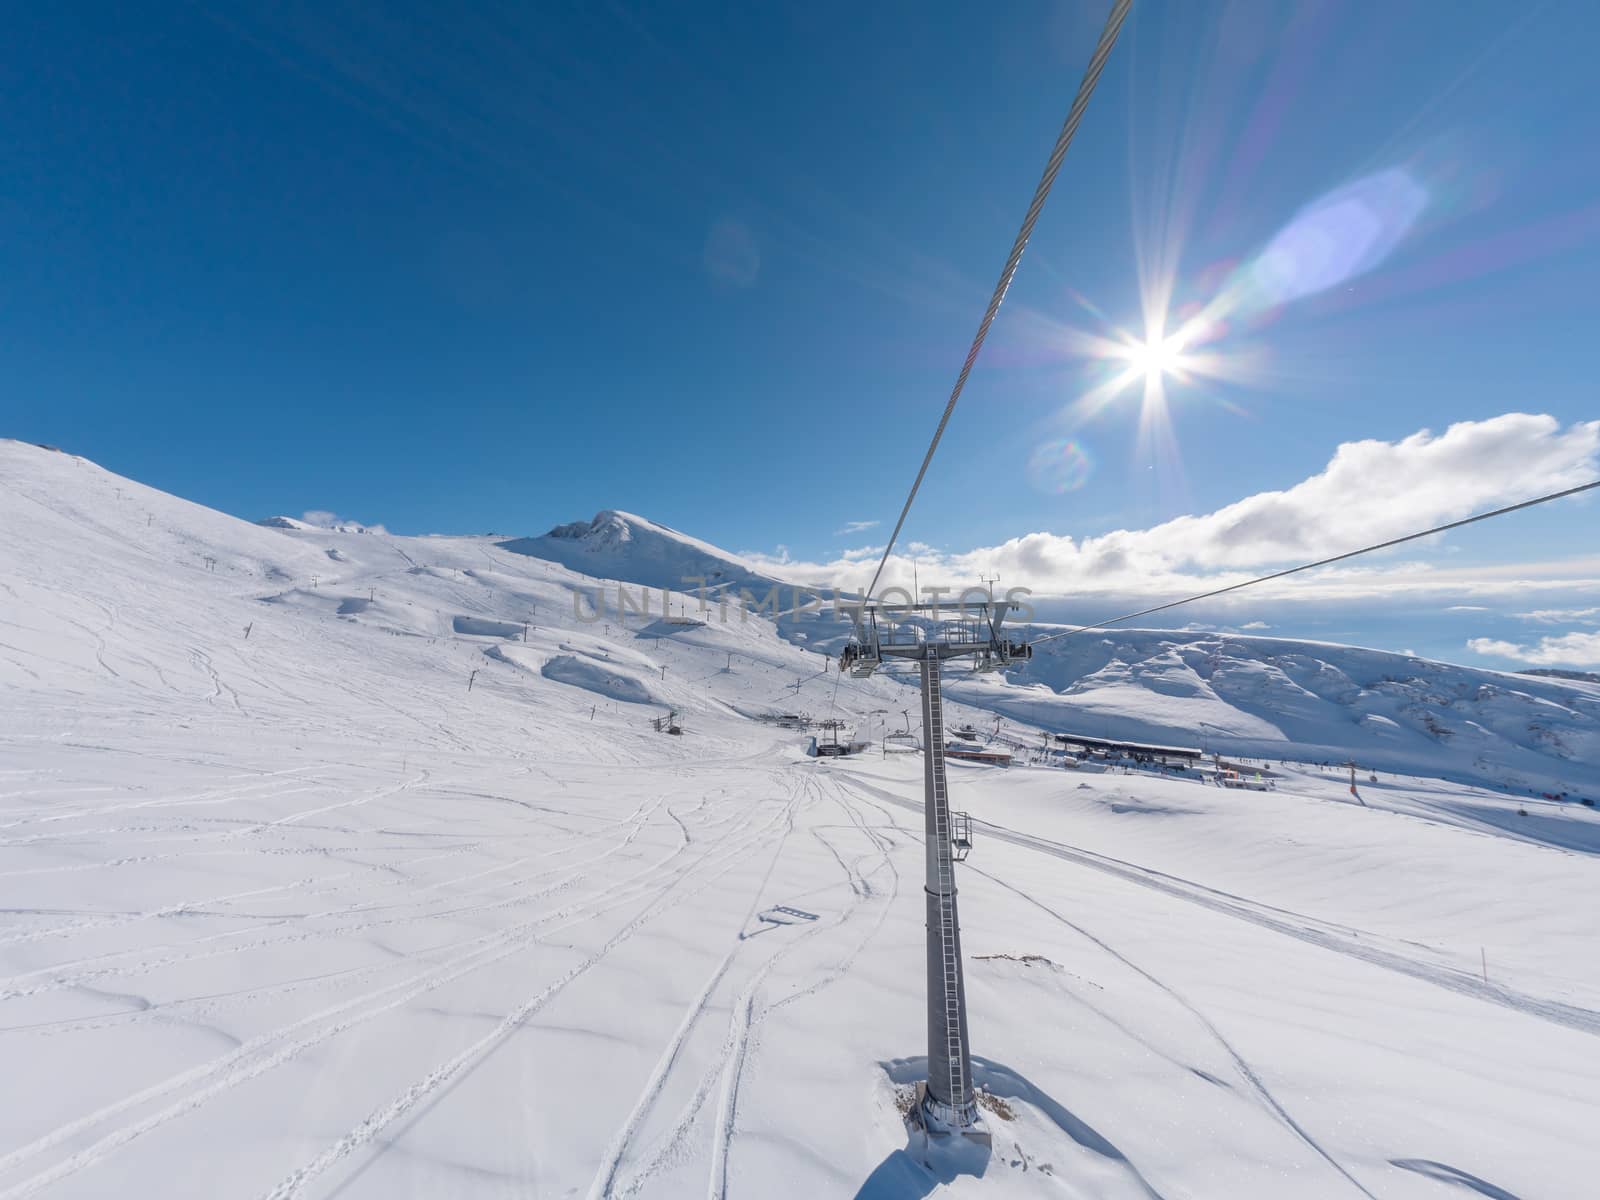 Ski lift in Parnassos ski resort by smoxx